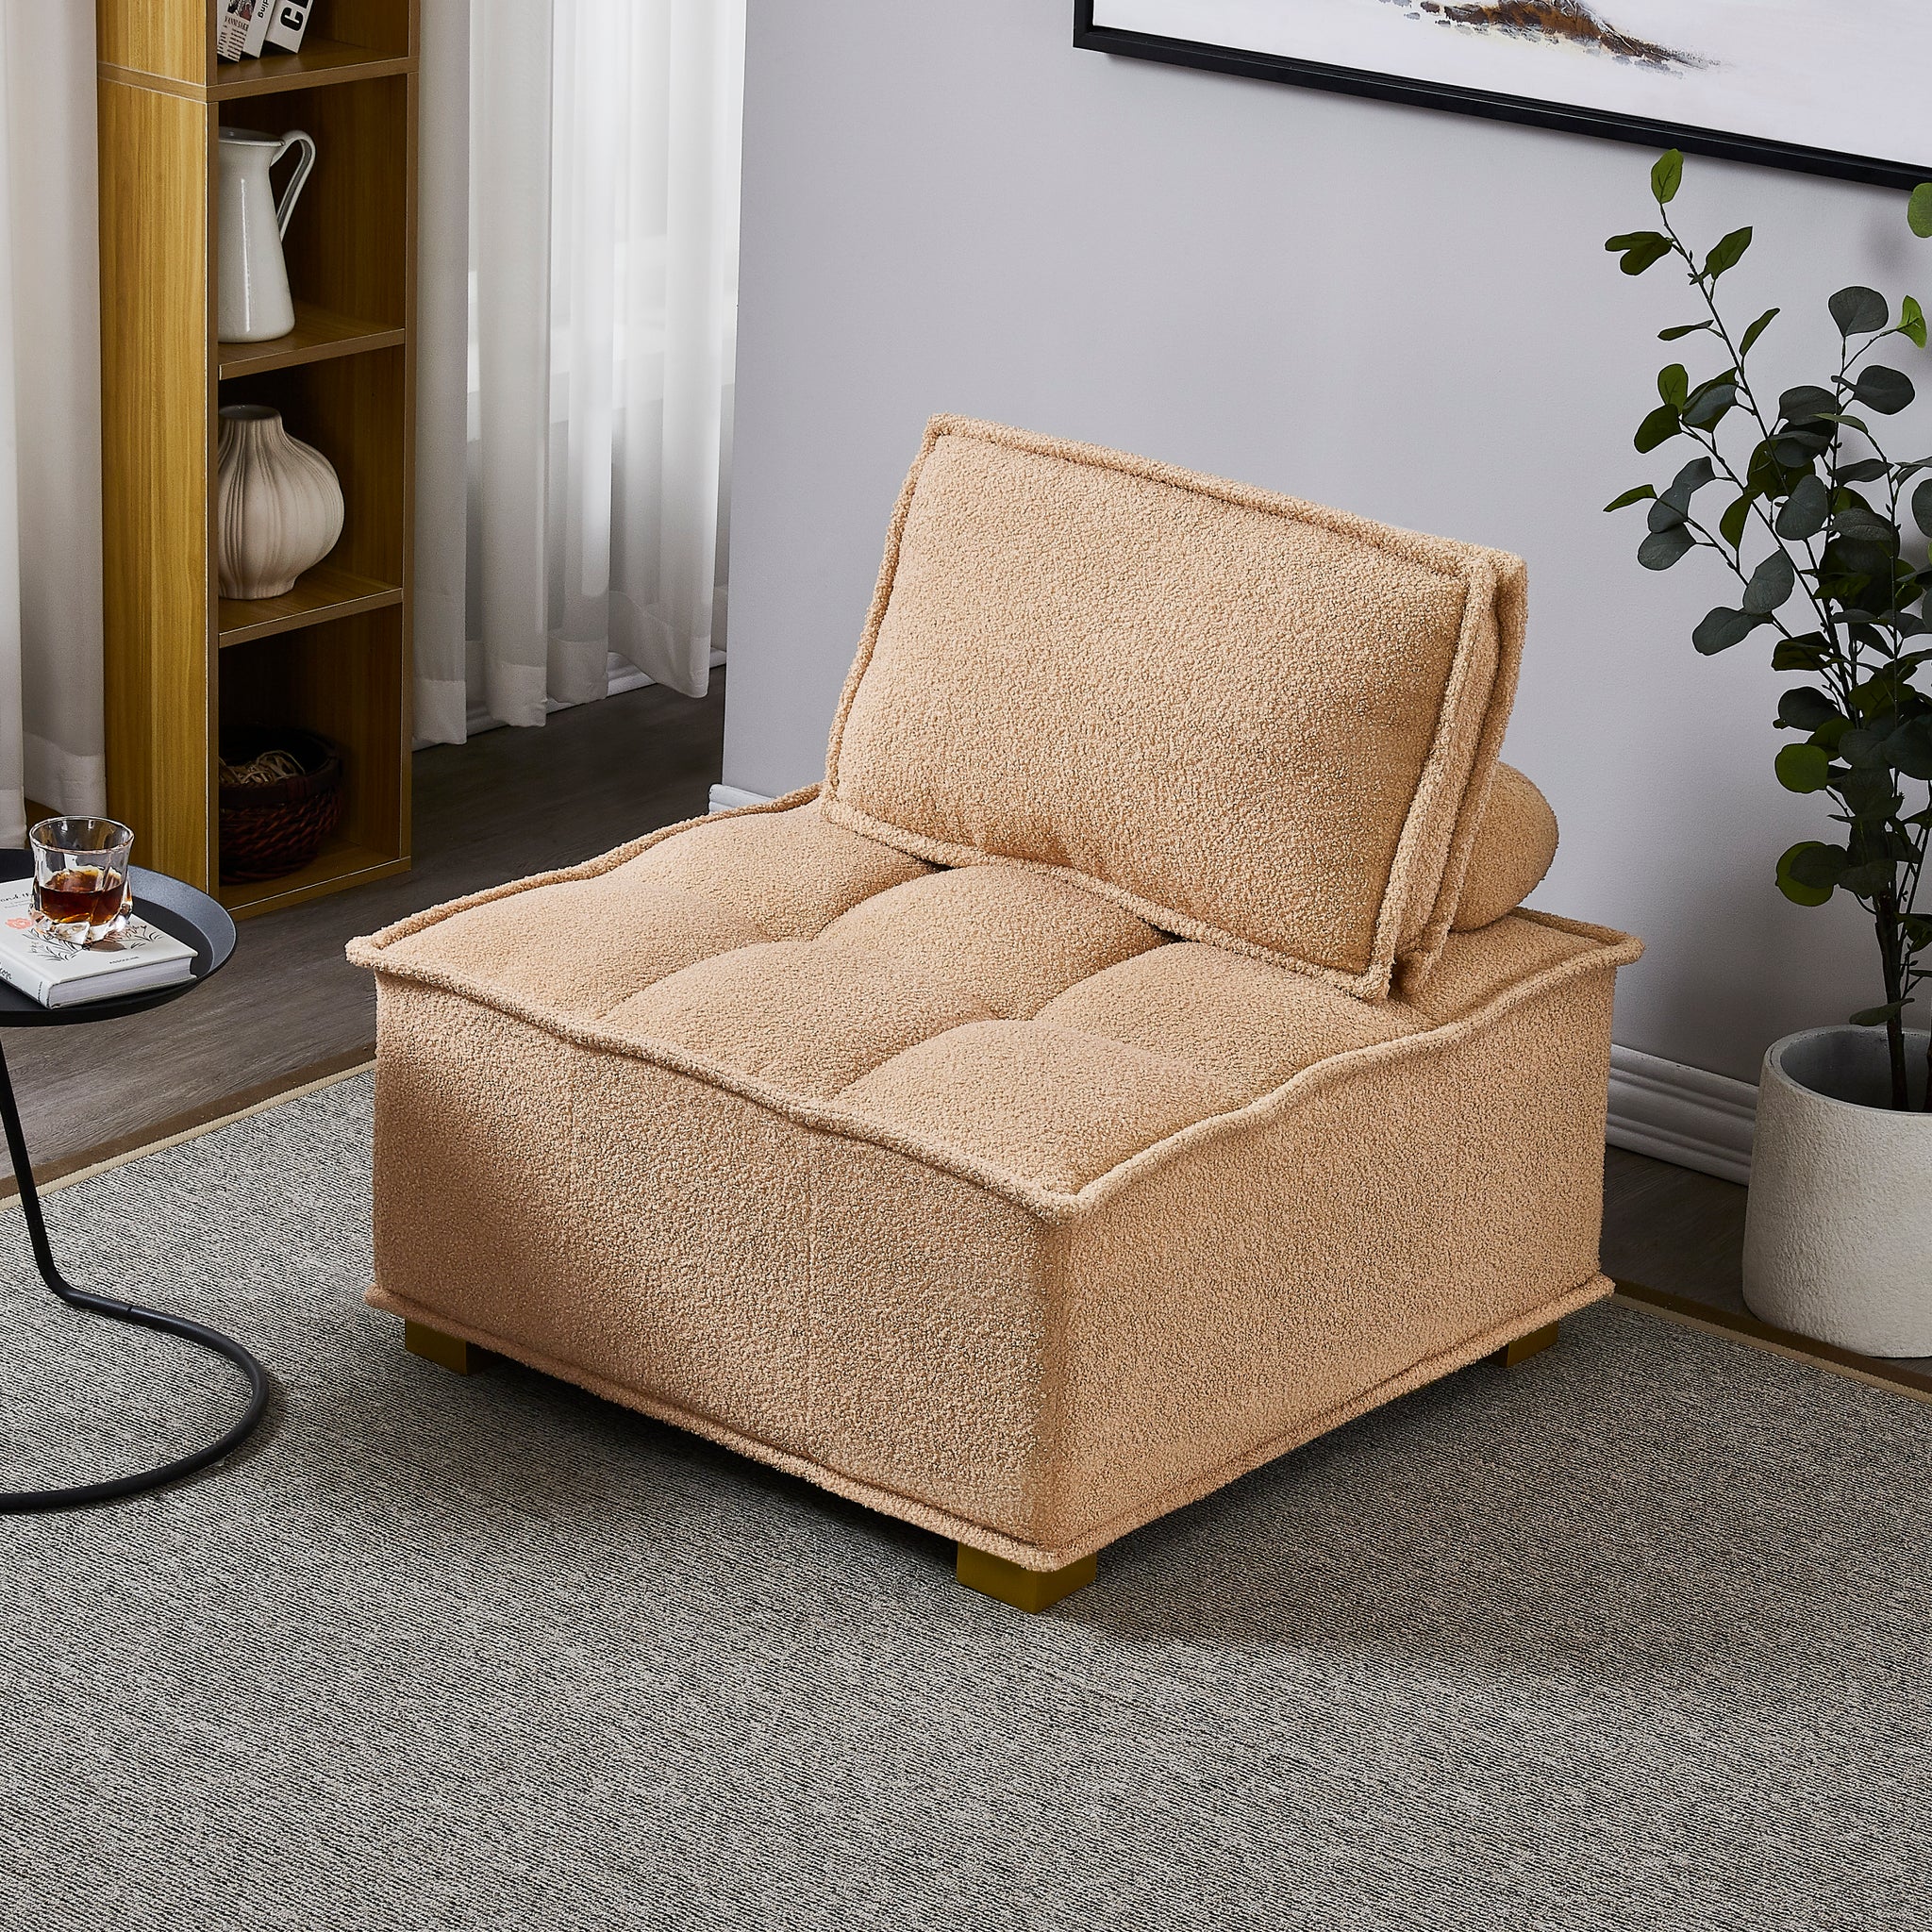 Lazy sofa ottoman with gold wooden legs teddy fabric khaki-foam-fabric